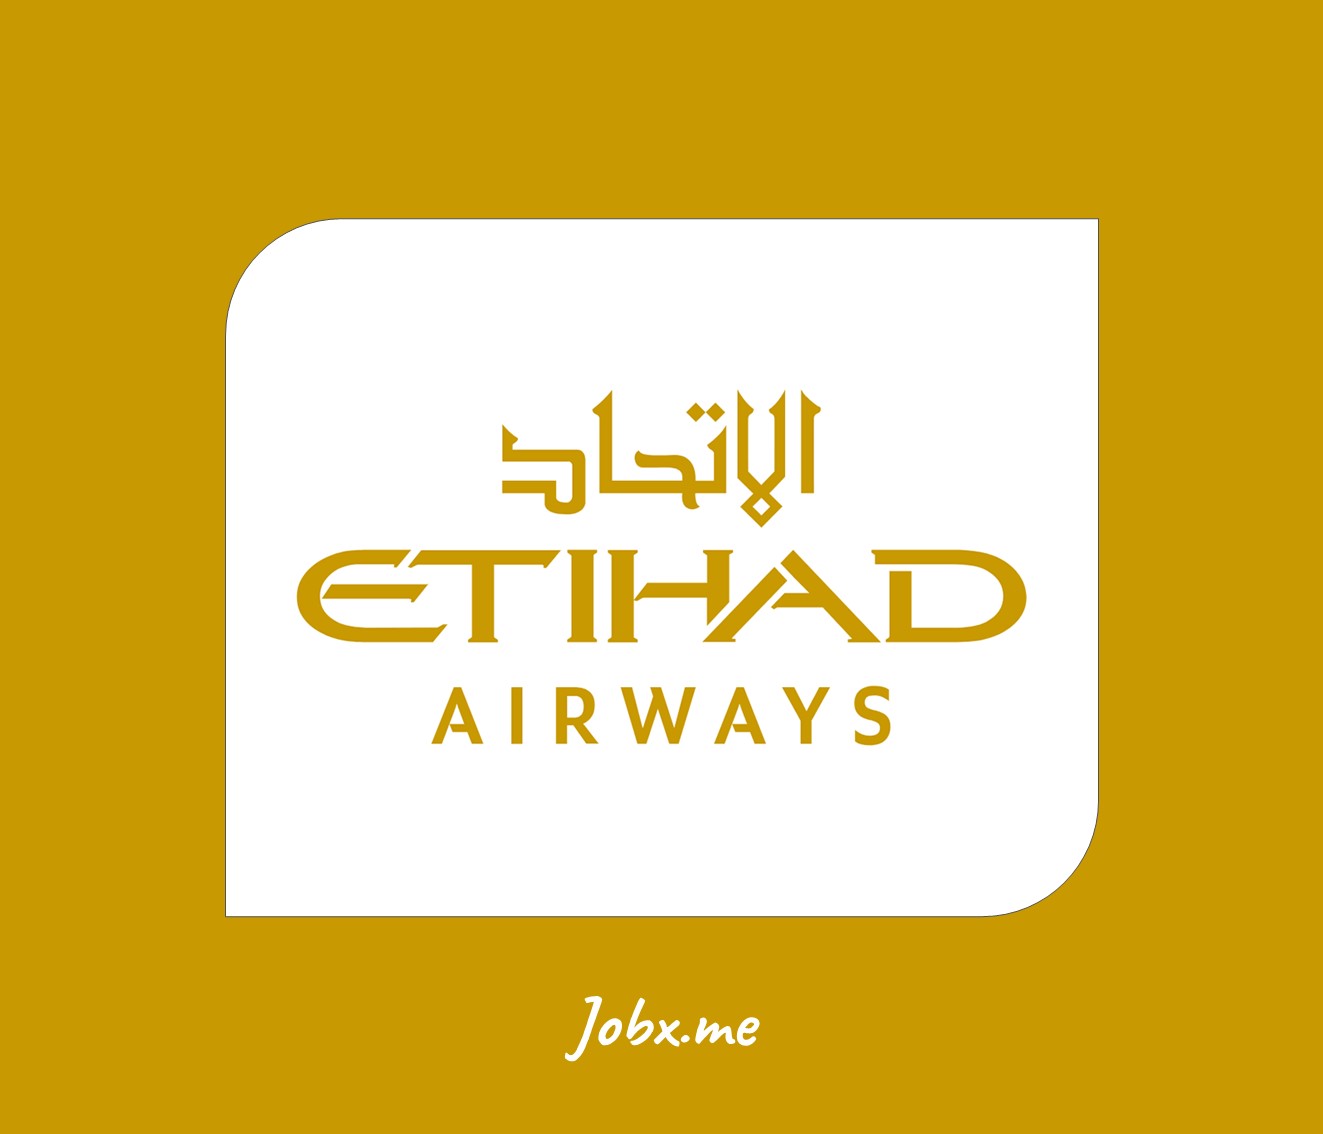 Etihad Airways Jobs